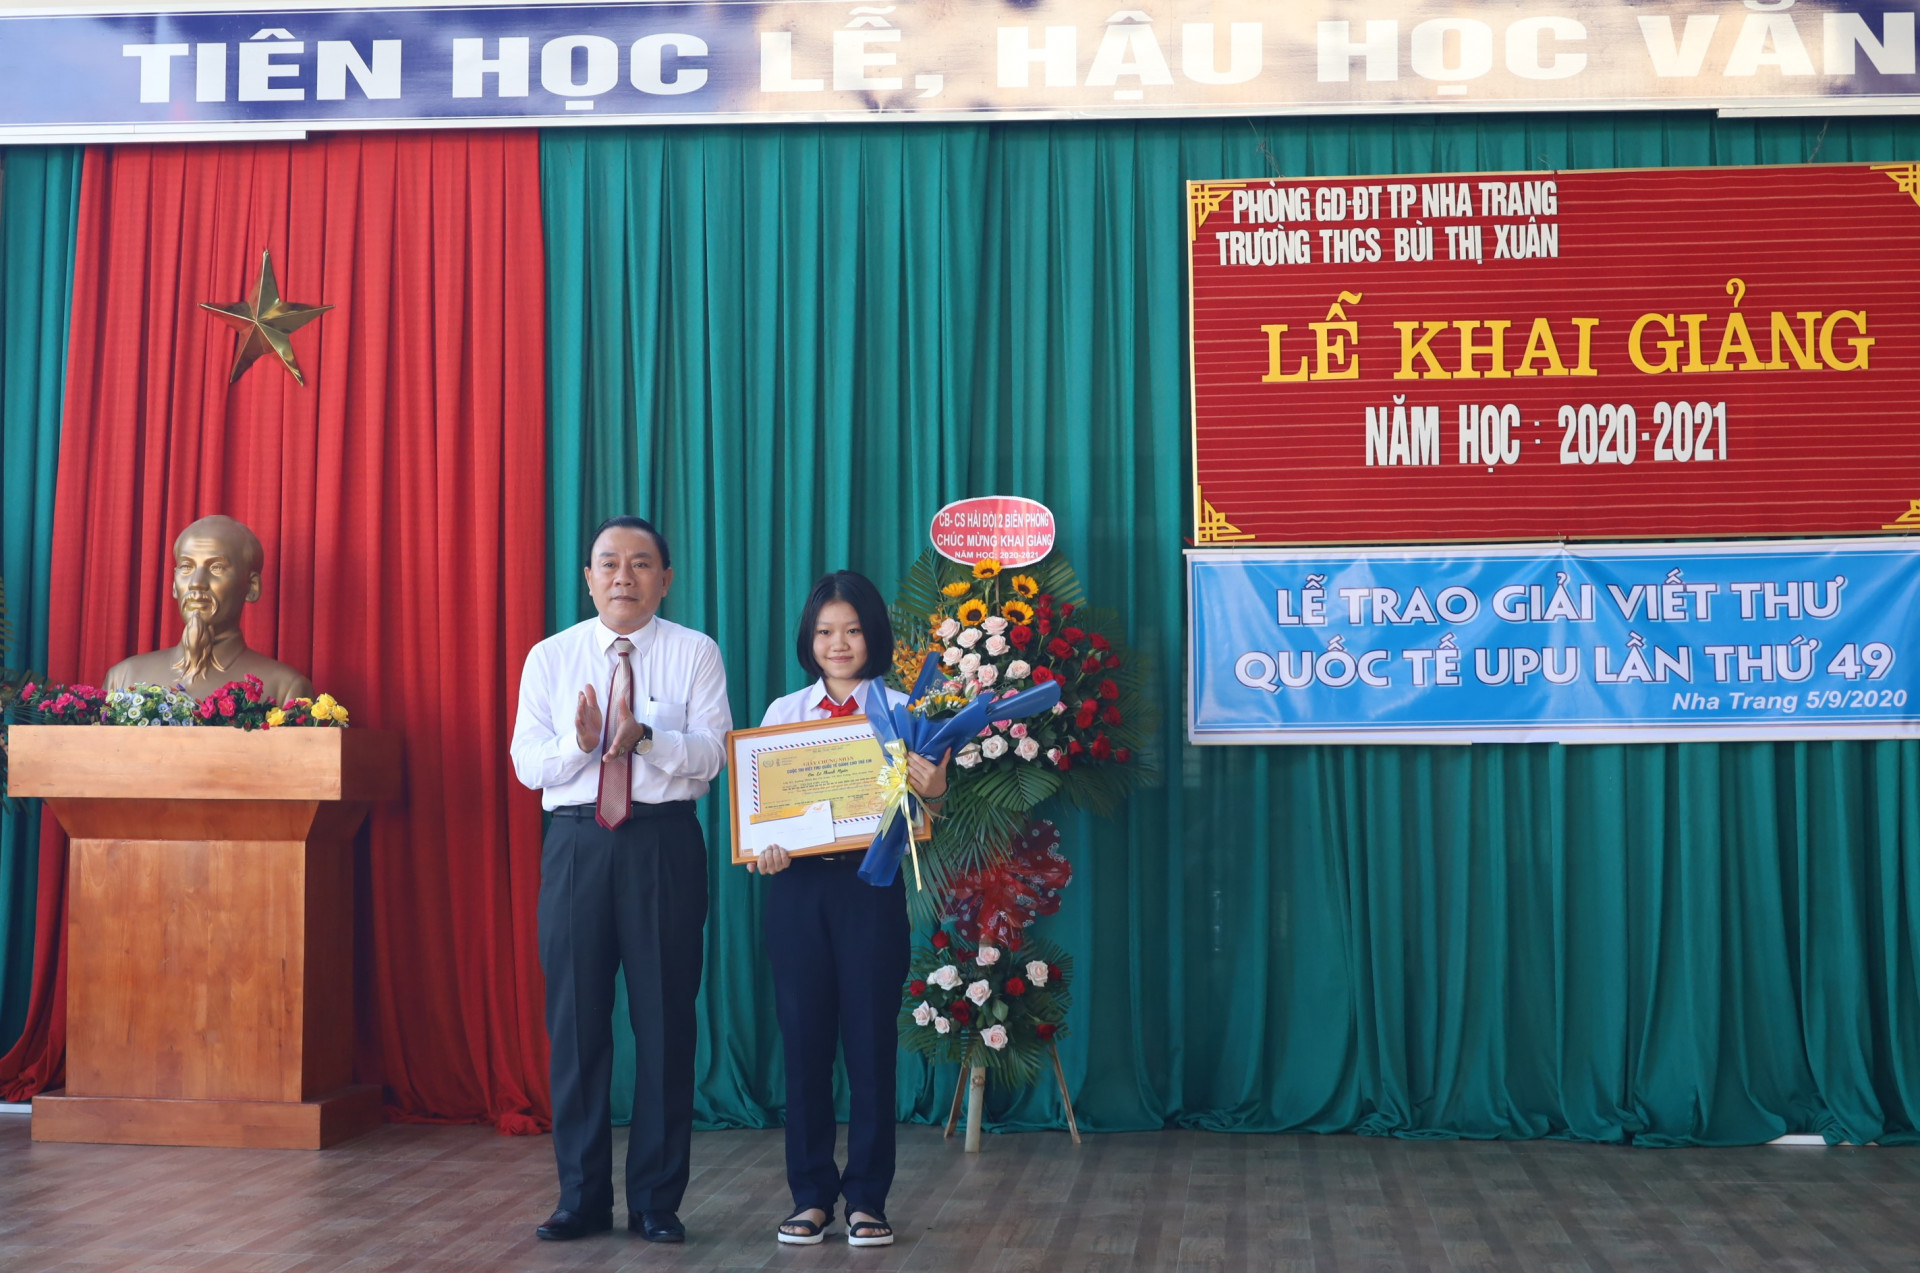 Lãnh đạo Sở Thông tin và Truyền thông tỉnh trao giải Cuộc thi viết thư Quốc tế UPU lần thứ 49 cho em Lê Thanh Ngân.